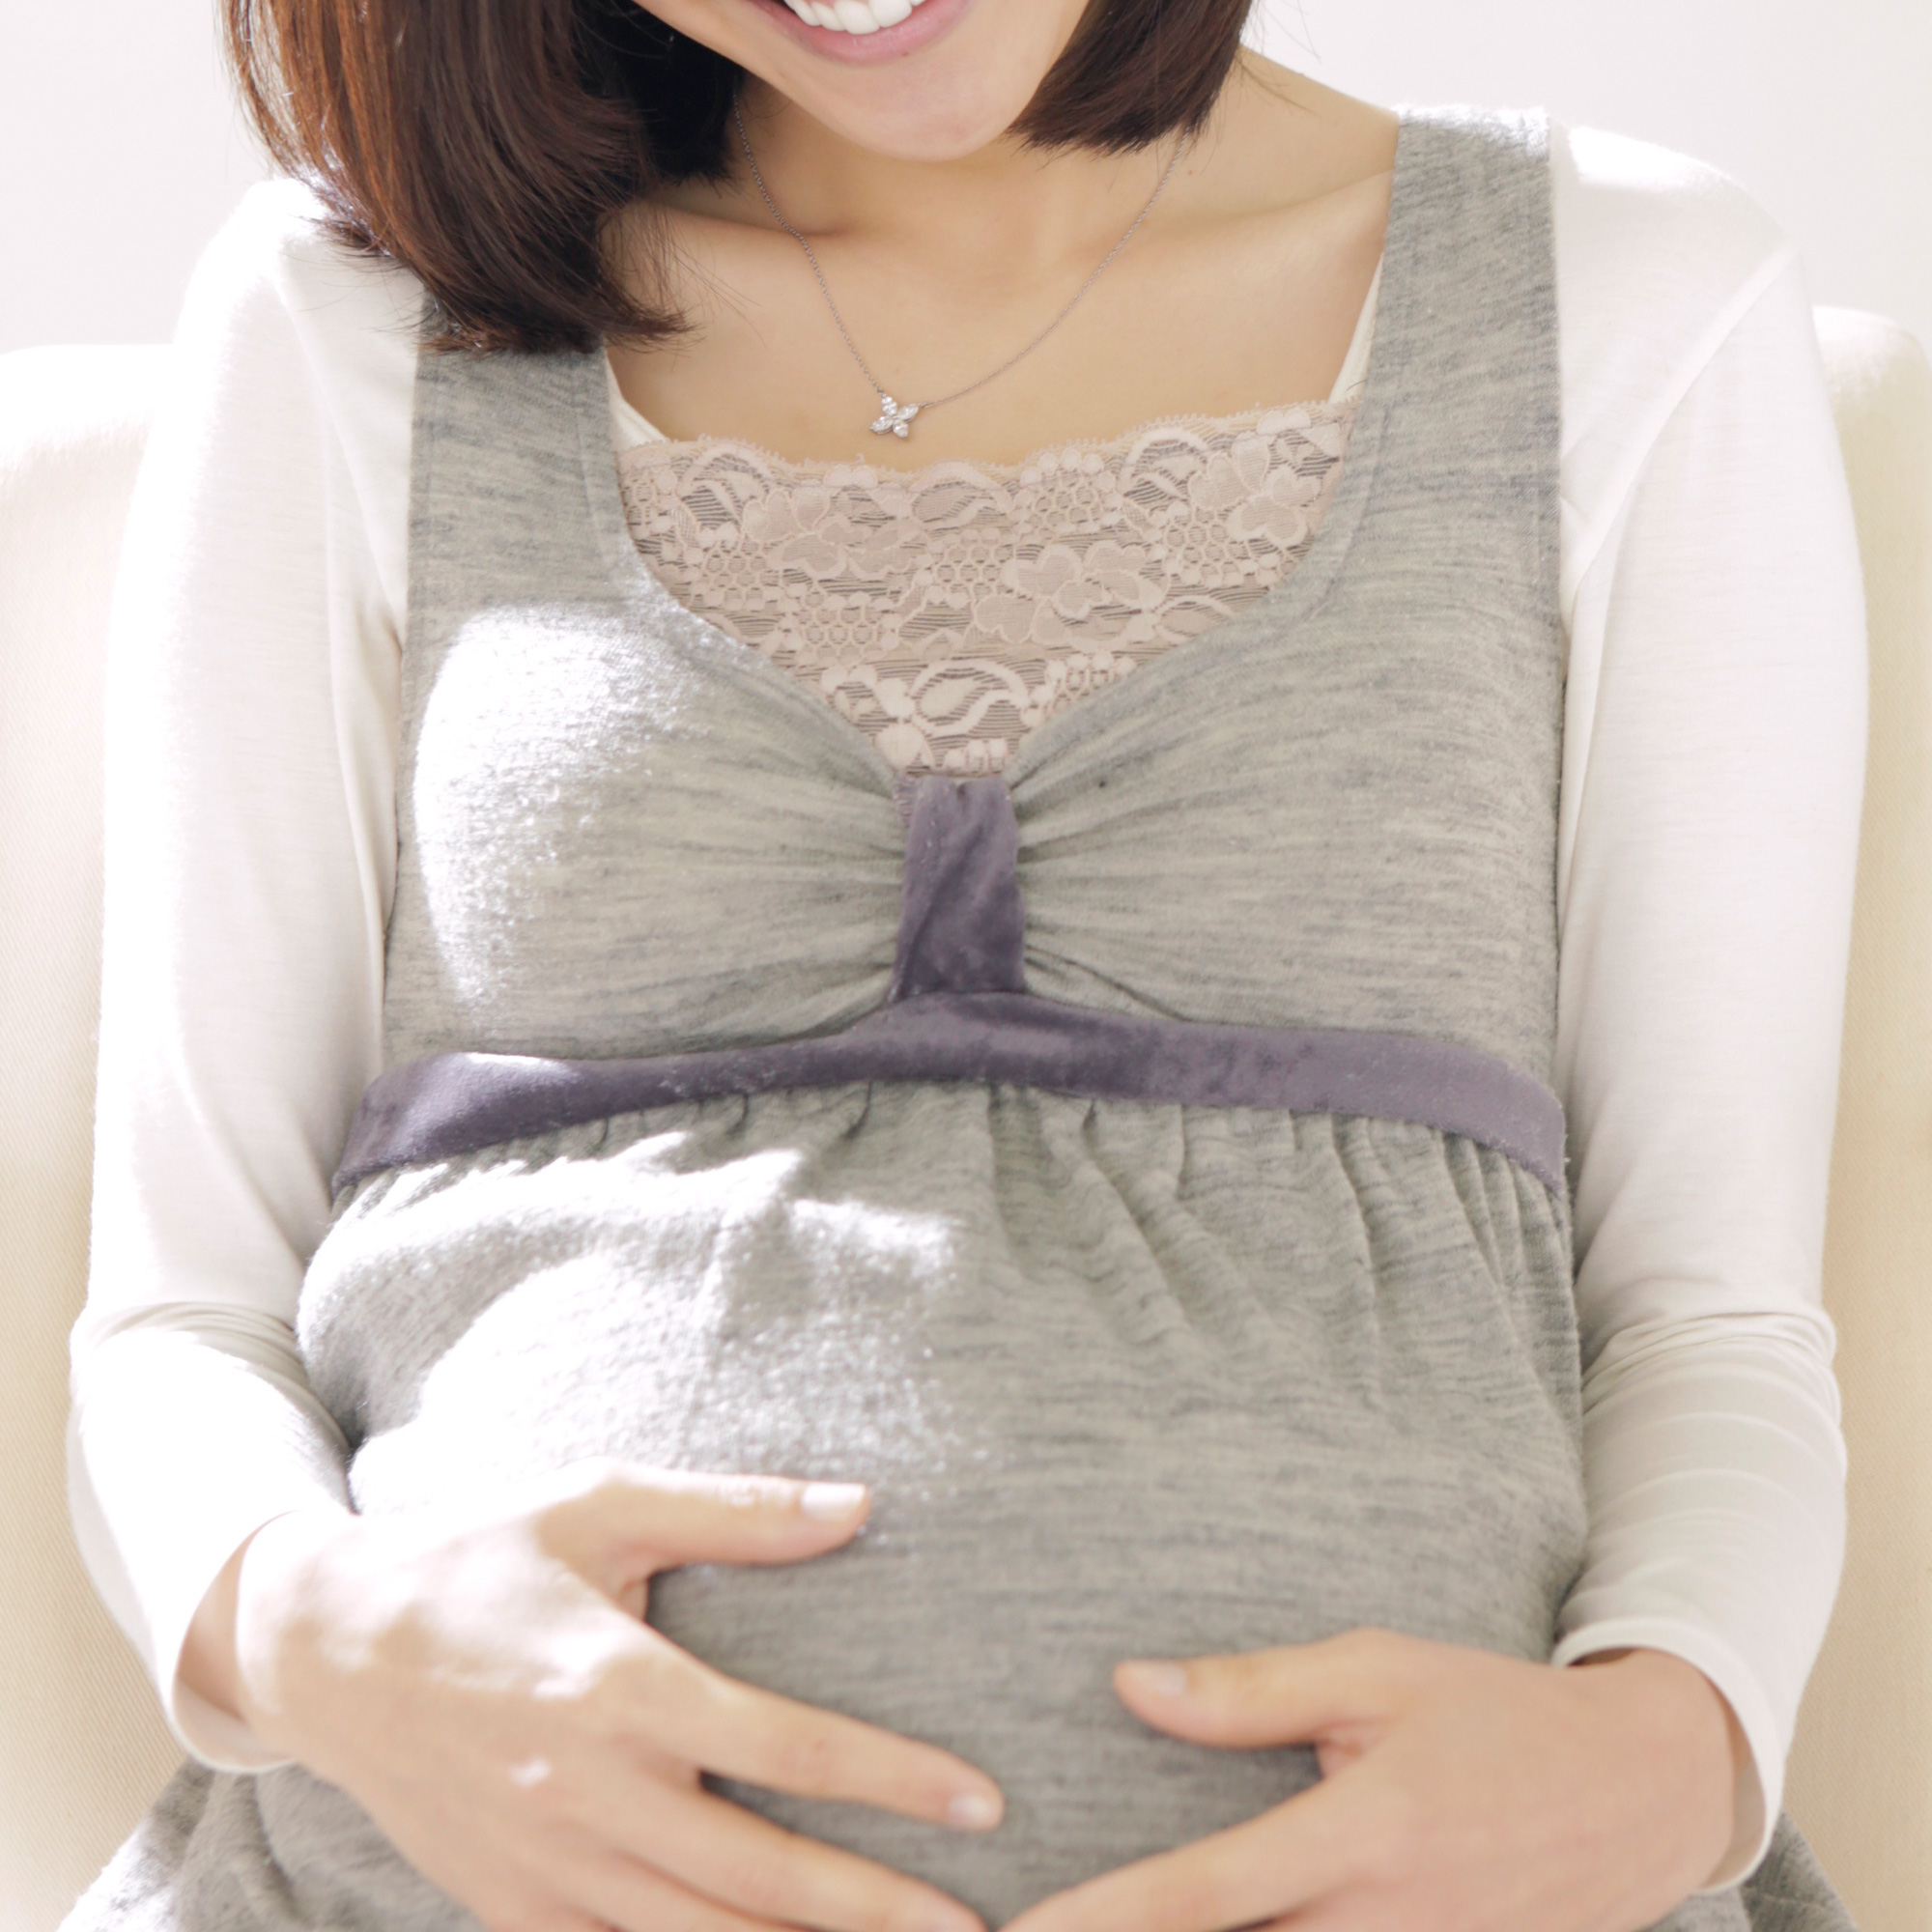 トキソプラズマが妊娠に与える影響